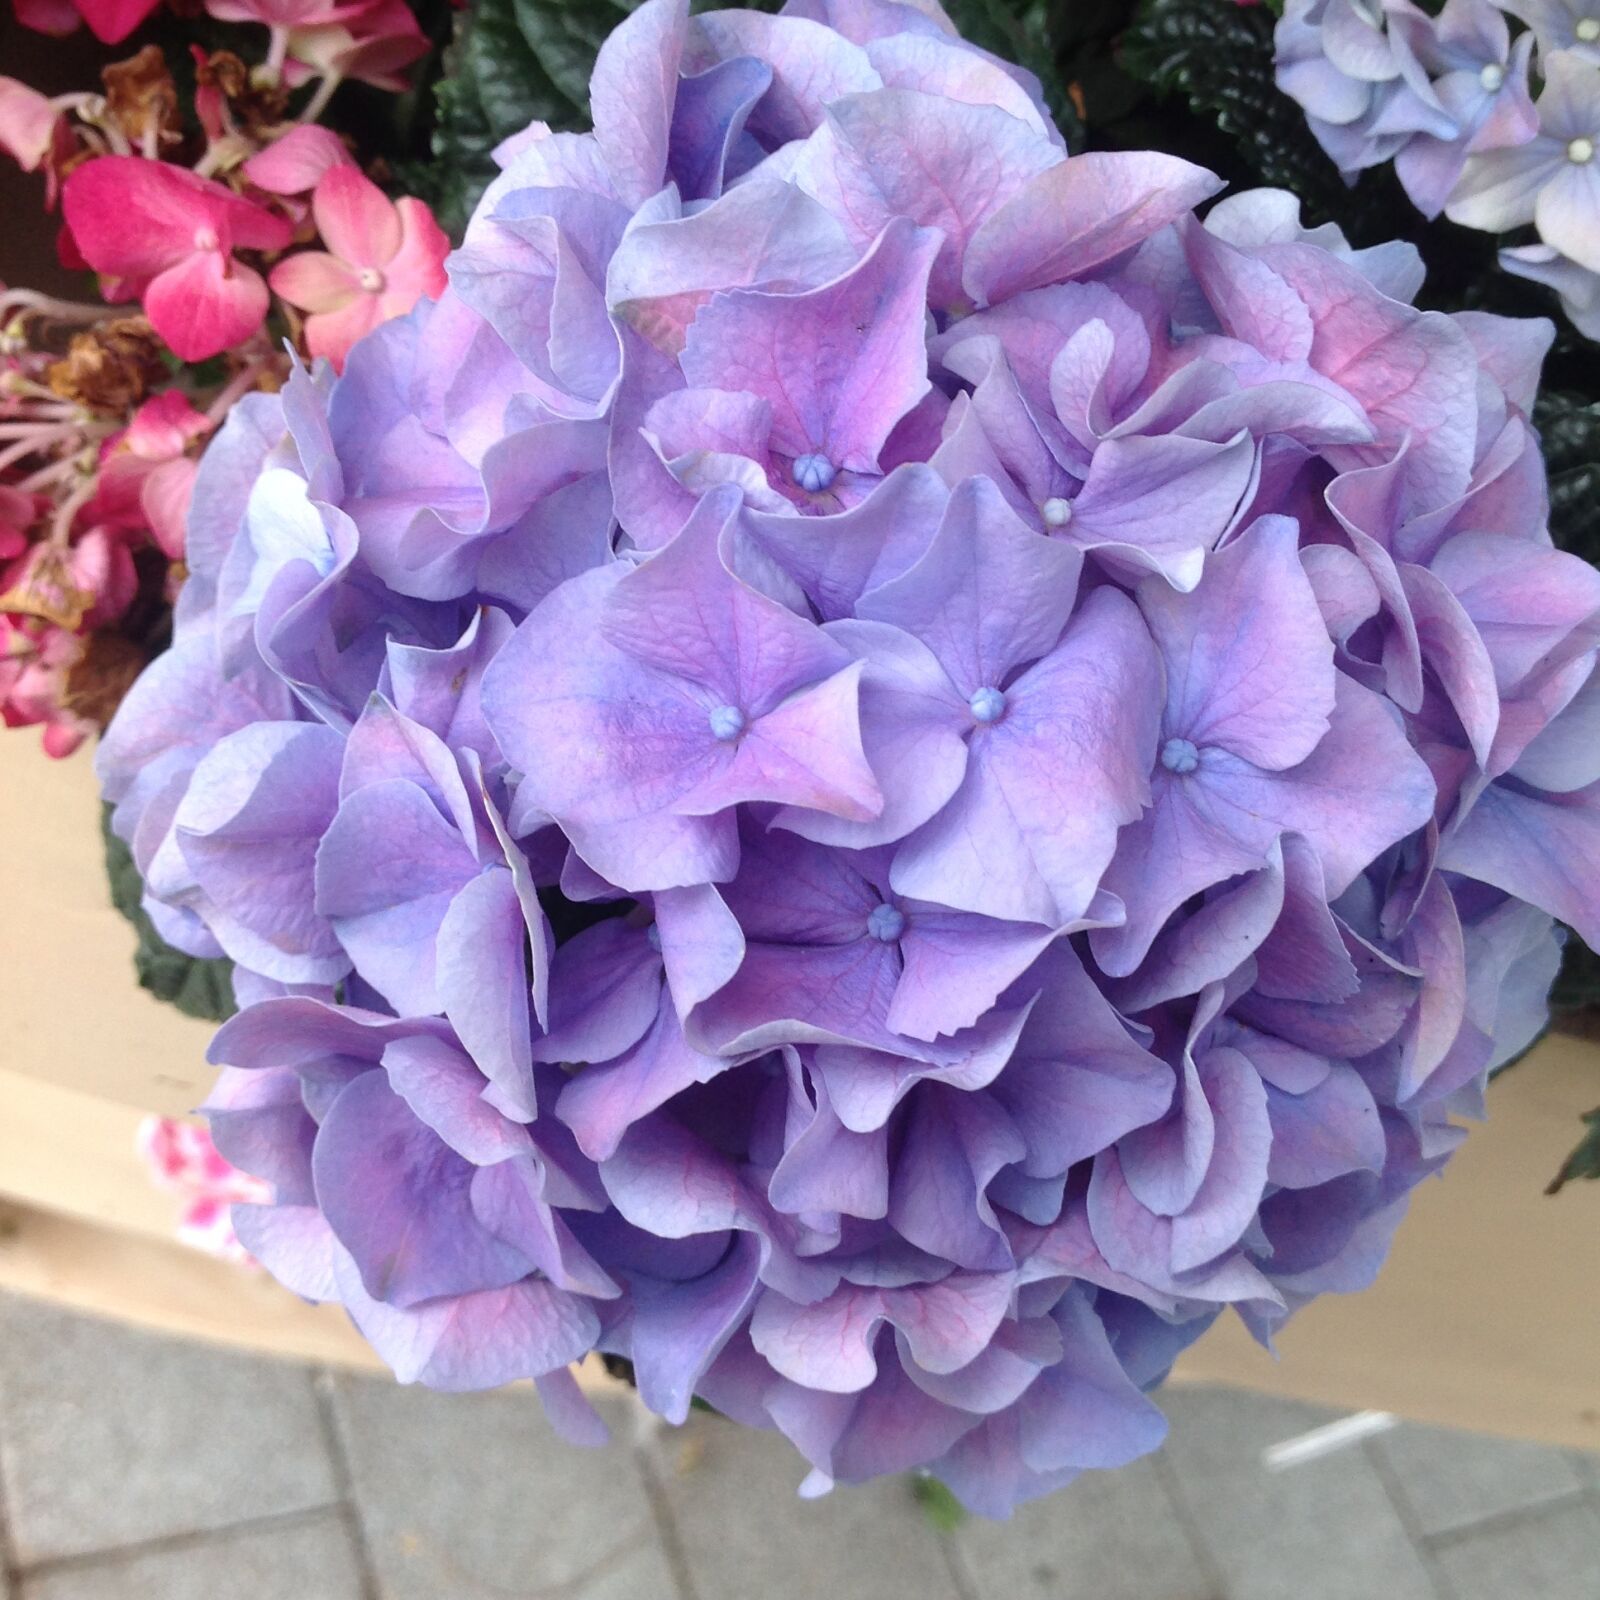 Apple iPad sample photo. Hydrangea, keukenhof garden, purple photography